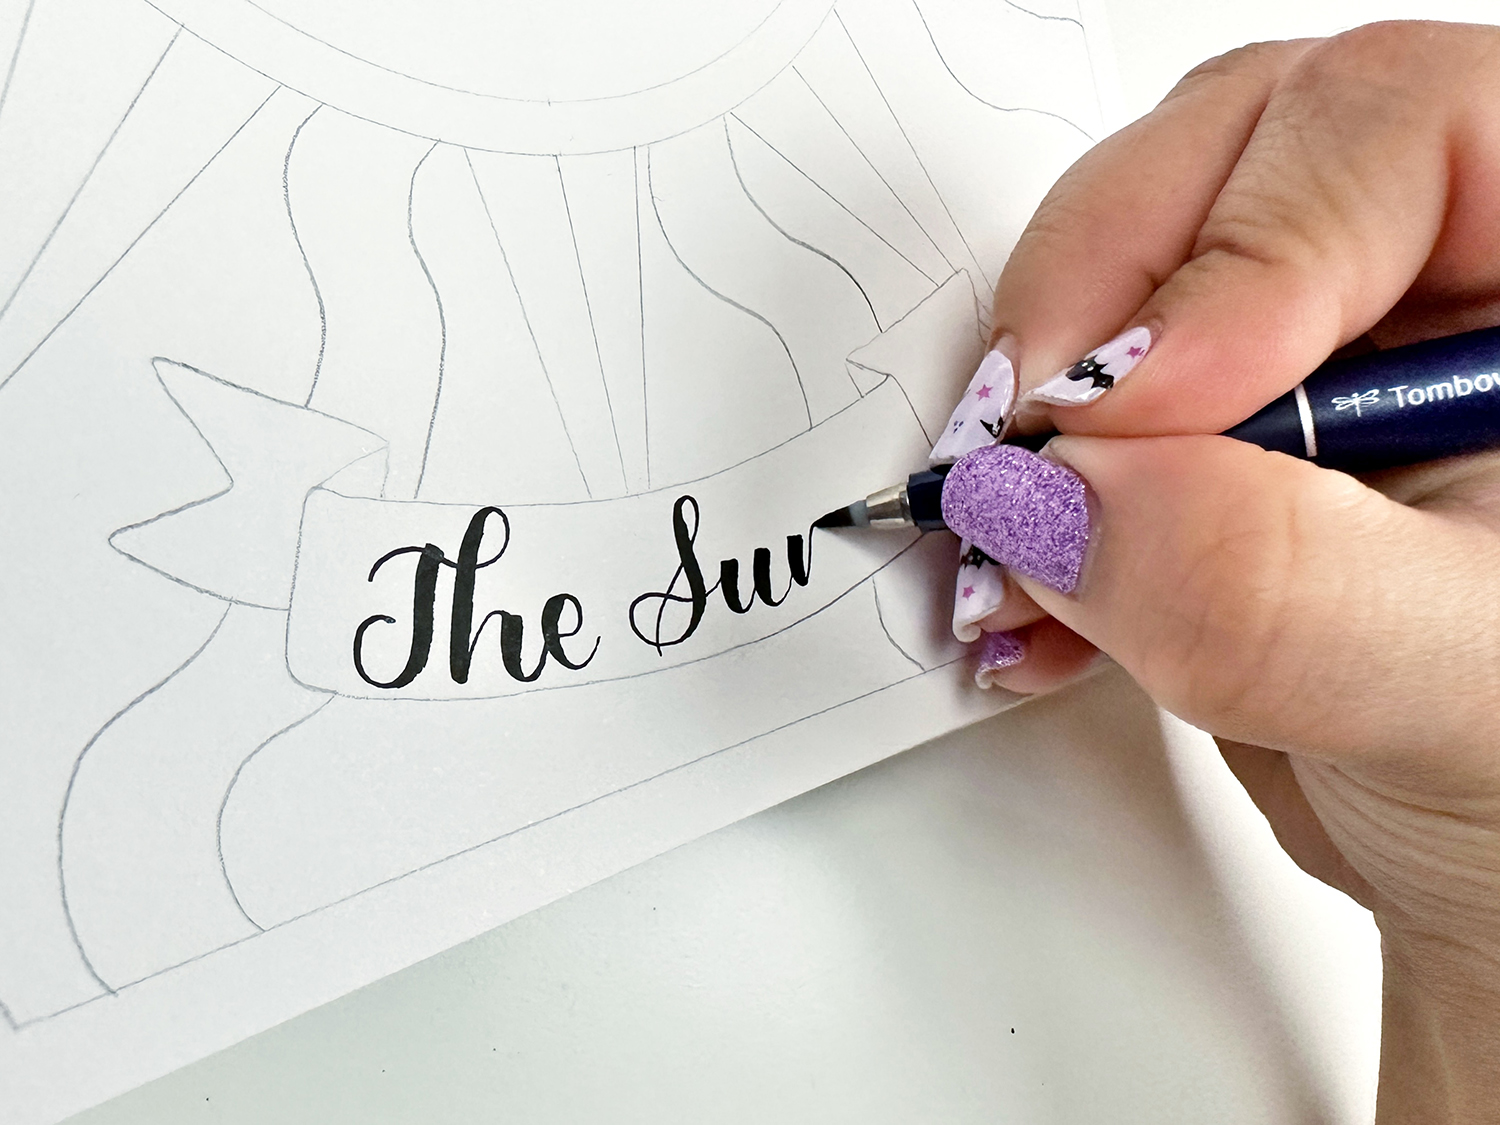 Adicione letras usando o pincel Tombow Fudenosuke.  A caneta pincel de ponta dura é realmente útil para iniciantes.  #tombow #lettering